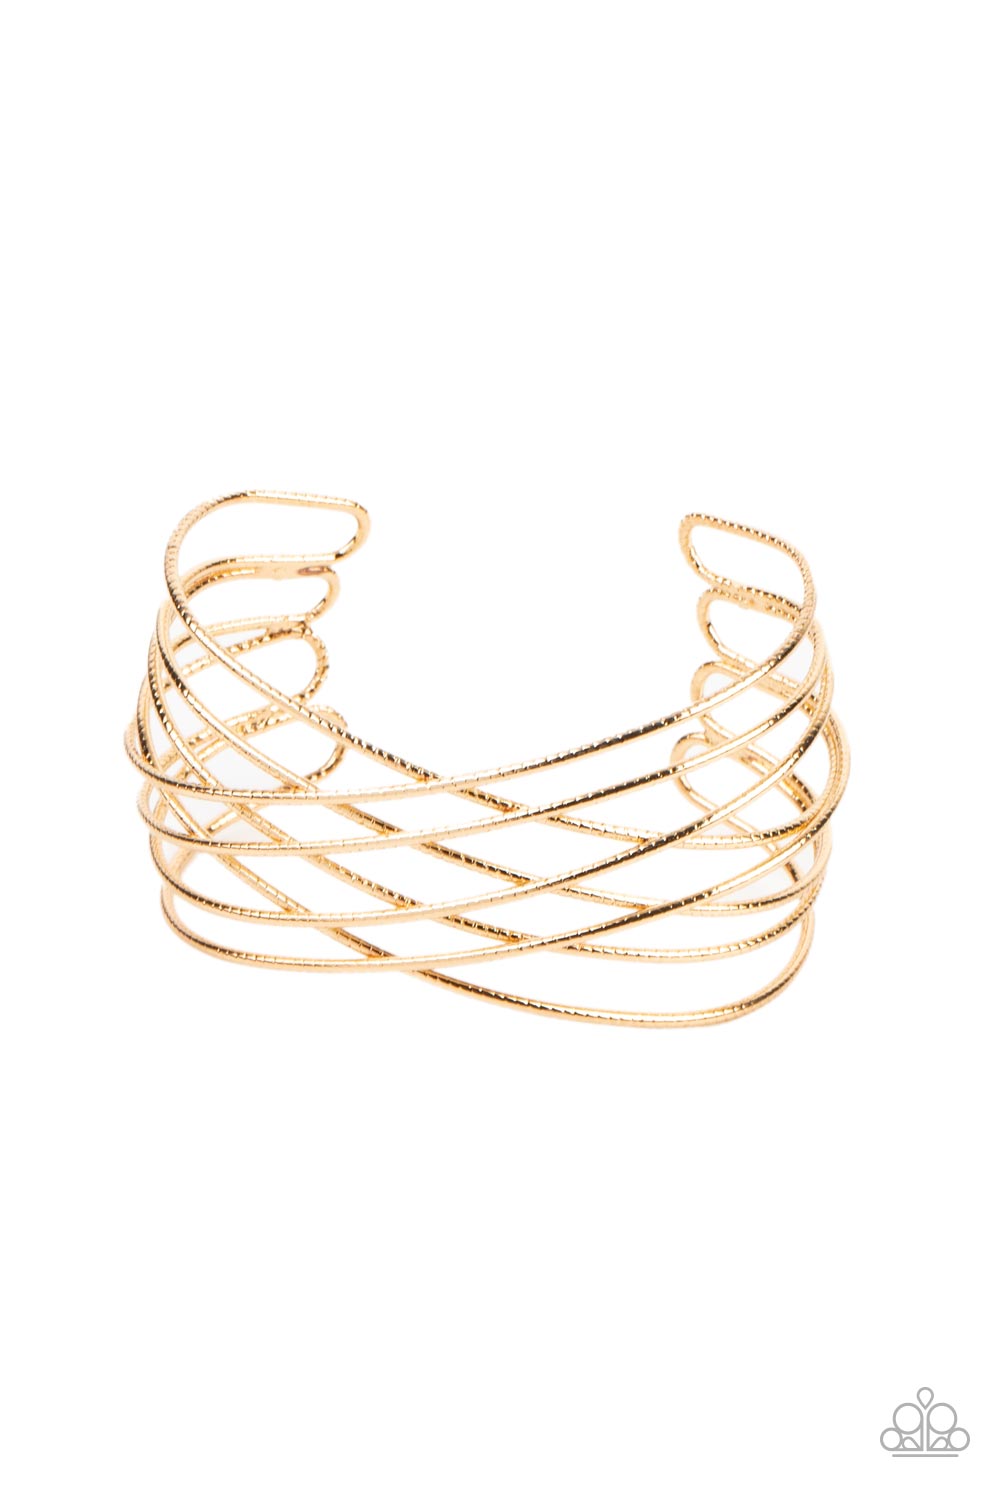 strike-out-shimmer-gold-bracelet